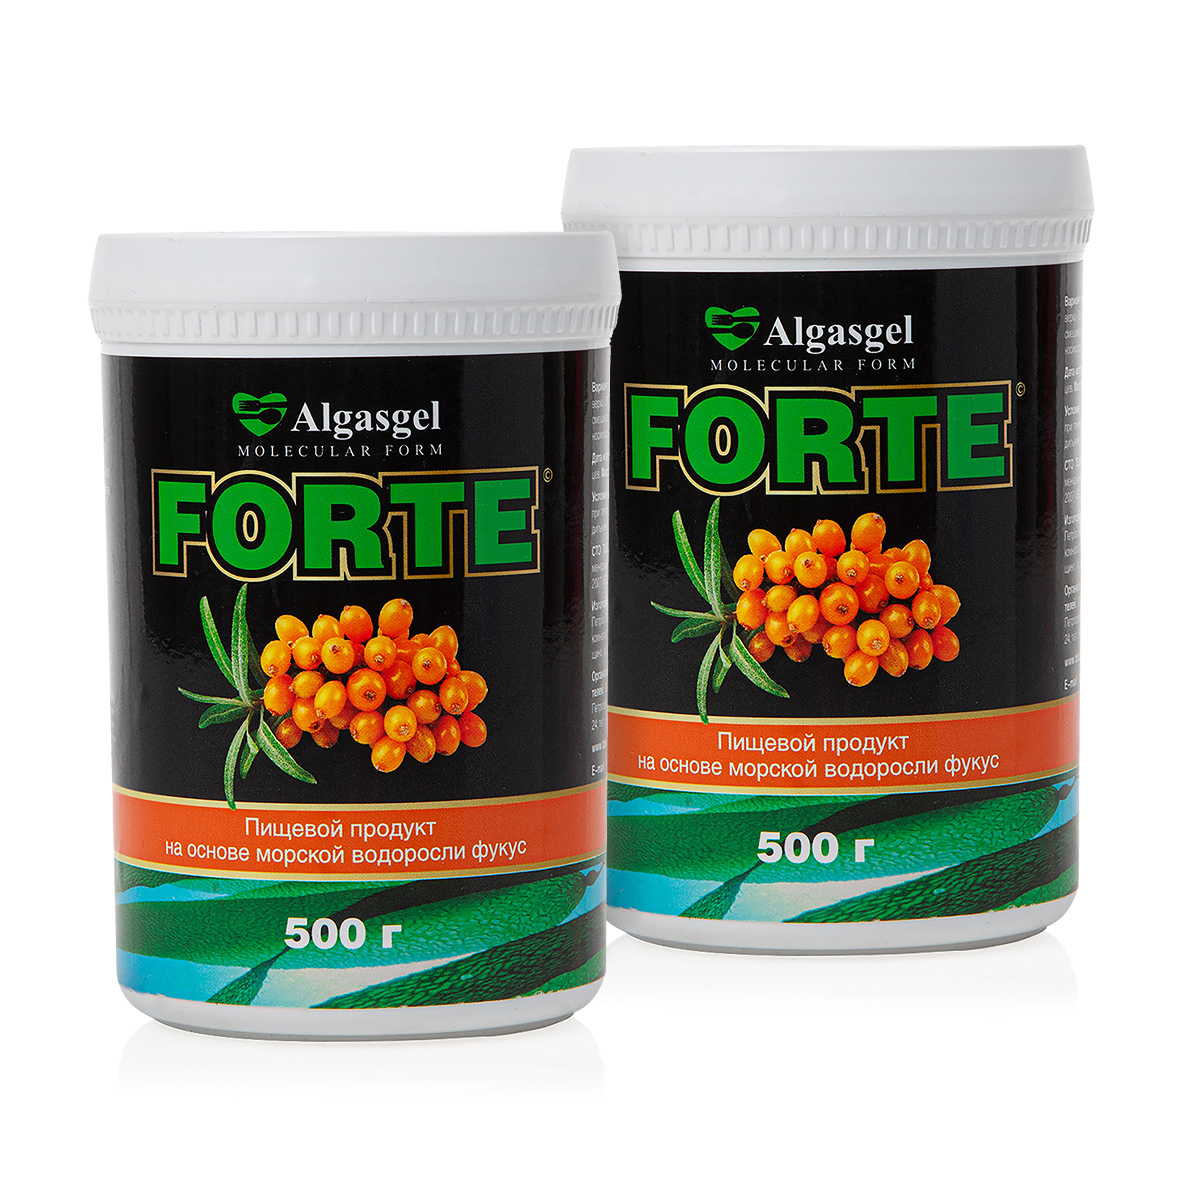 endo 2 шт по 500 г 1 в подарок Пищевой продукт Algasgel Forte (2 шт. по 500 г) + подарок (500 г)